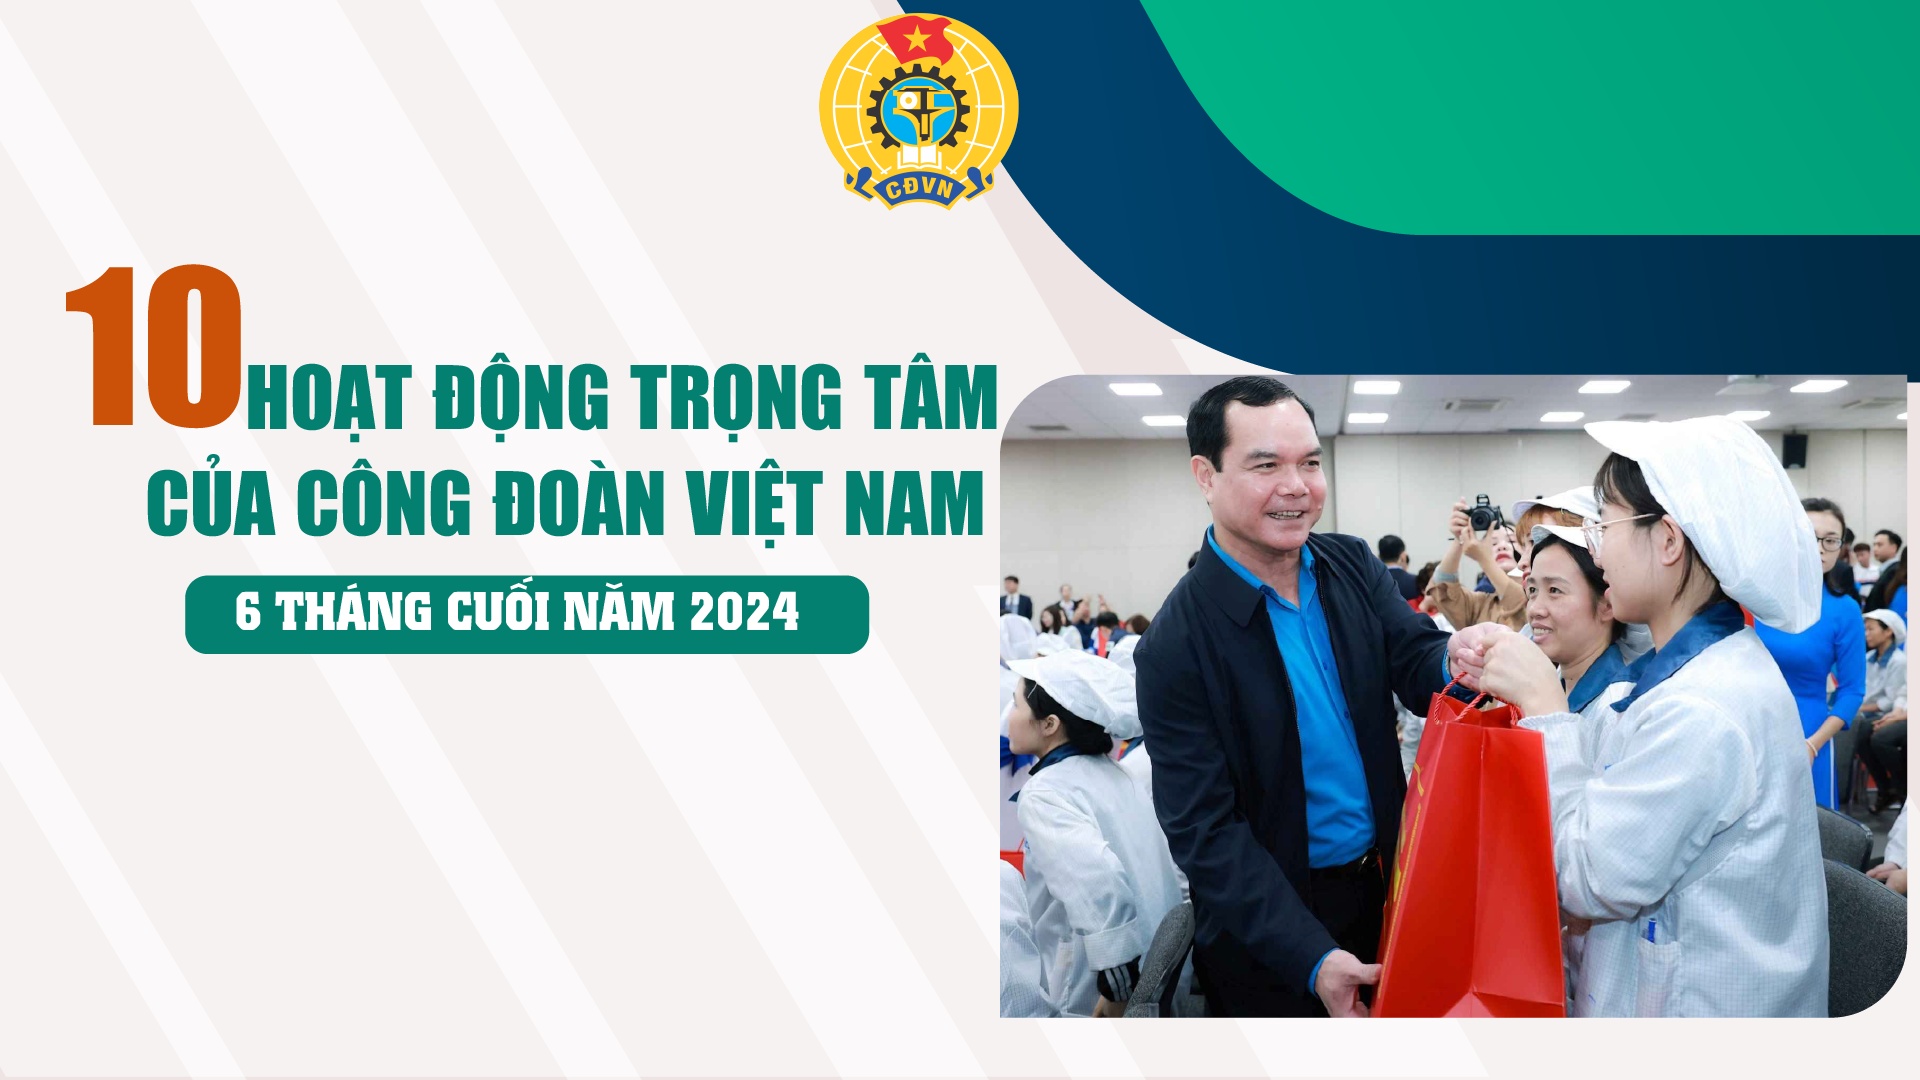 10 nhiệm vụ trọng tâm của Công đoàn Việt Nam trong 6 tháng cuối năm 2024